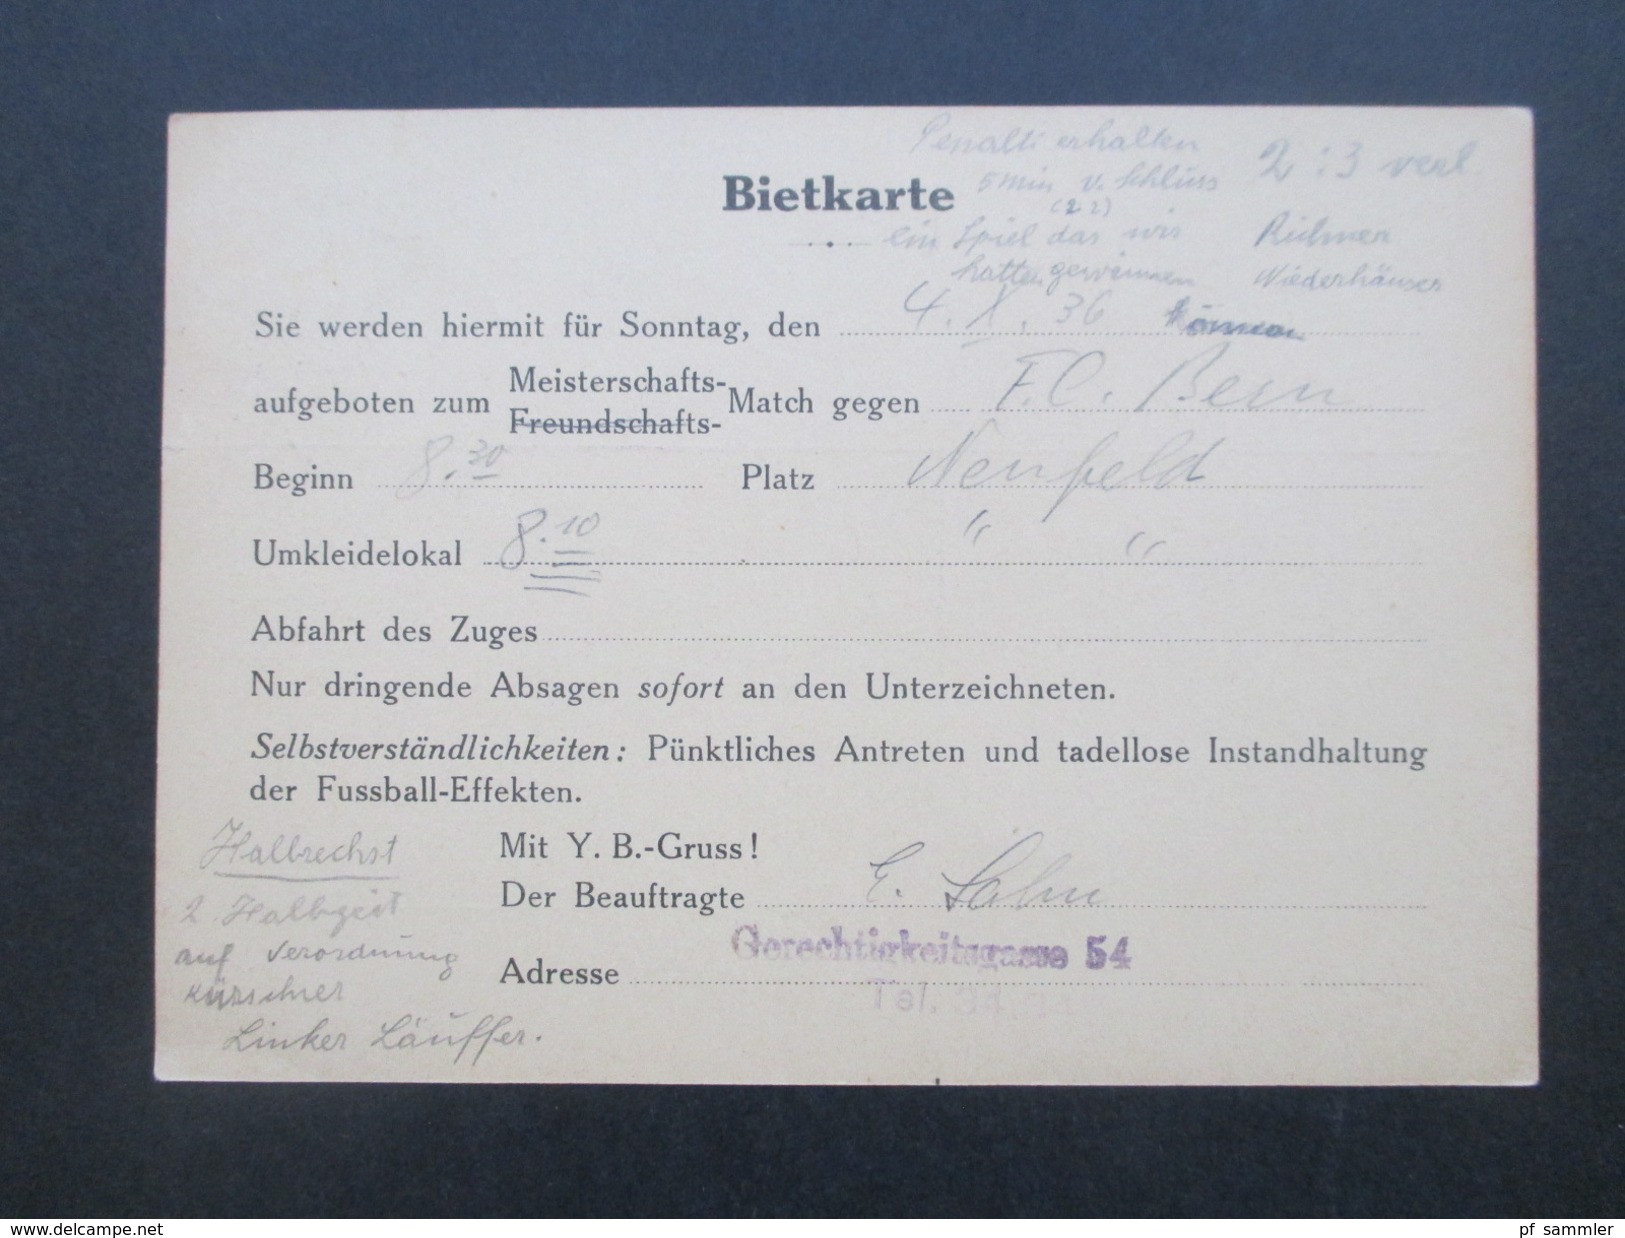 Schweiz 1936 / 40 BSC Young Boys Bern 6 PK/ Bietkarte an einen Spieler! Emil Schädeli. Stürmer! Mit persönlichen Notizen